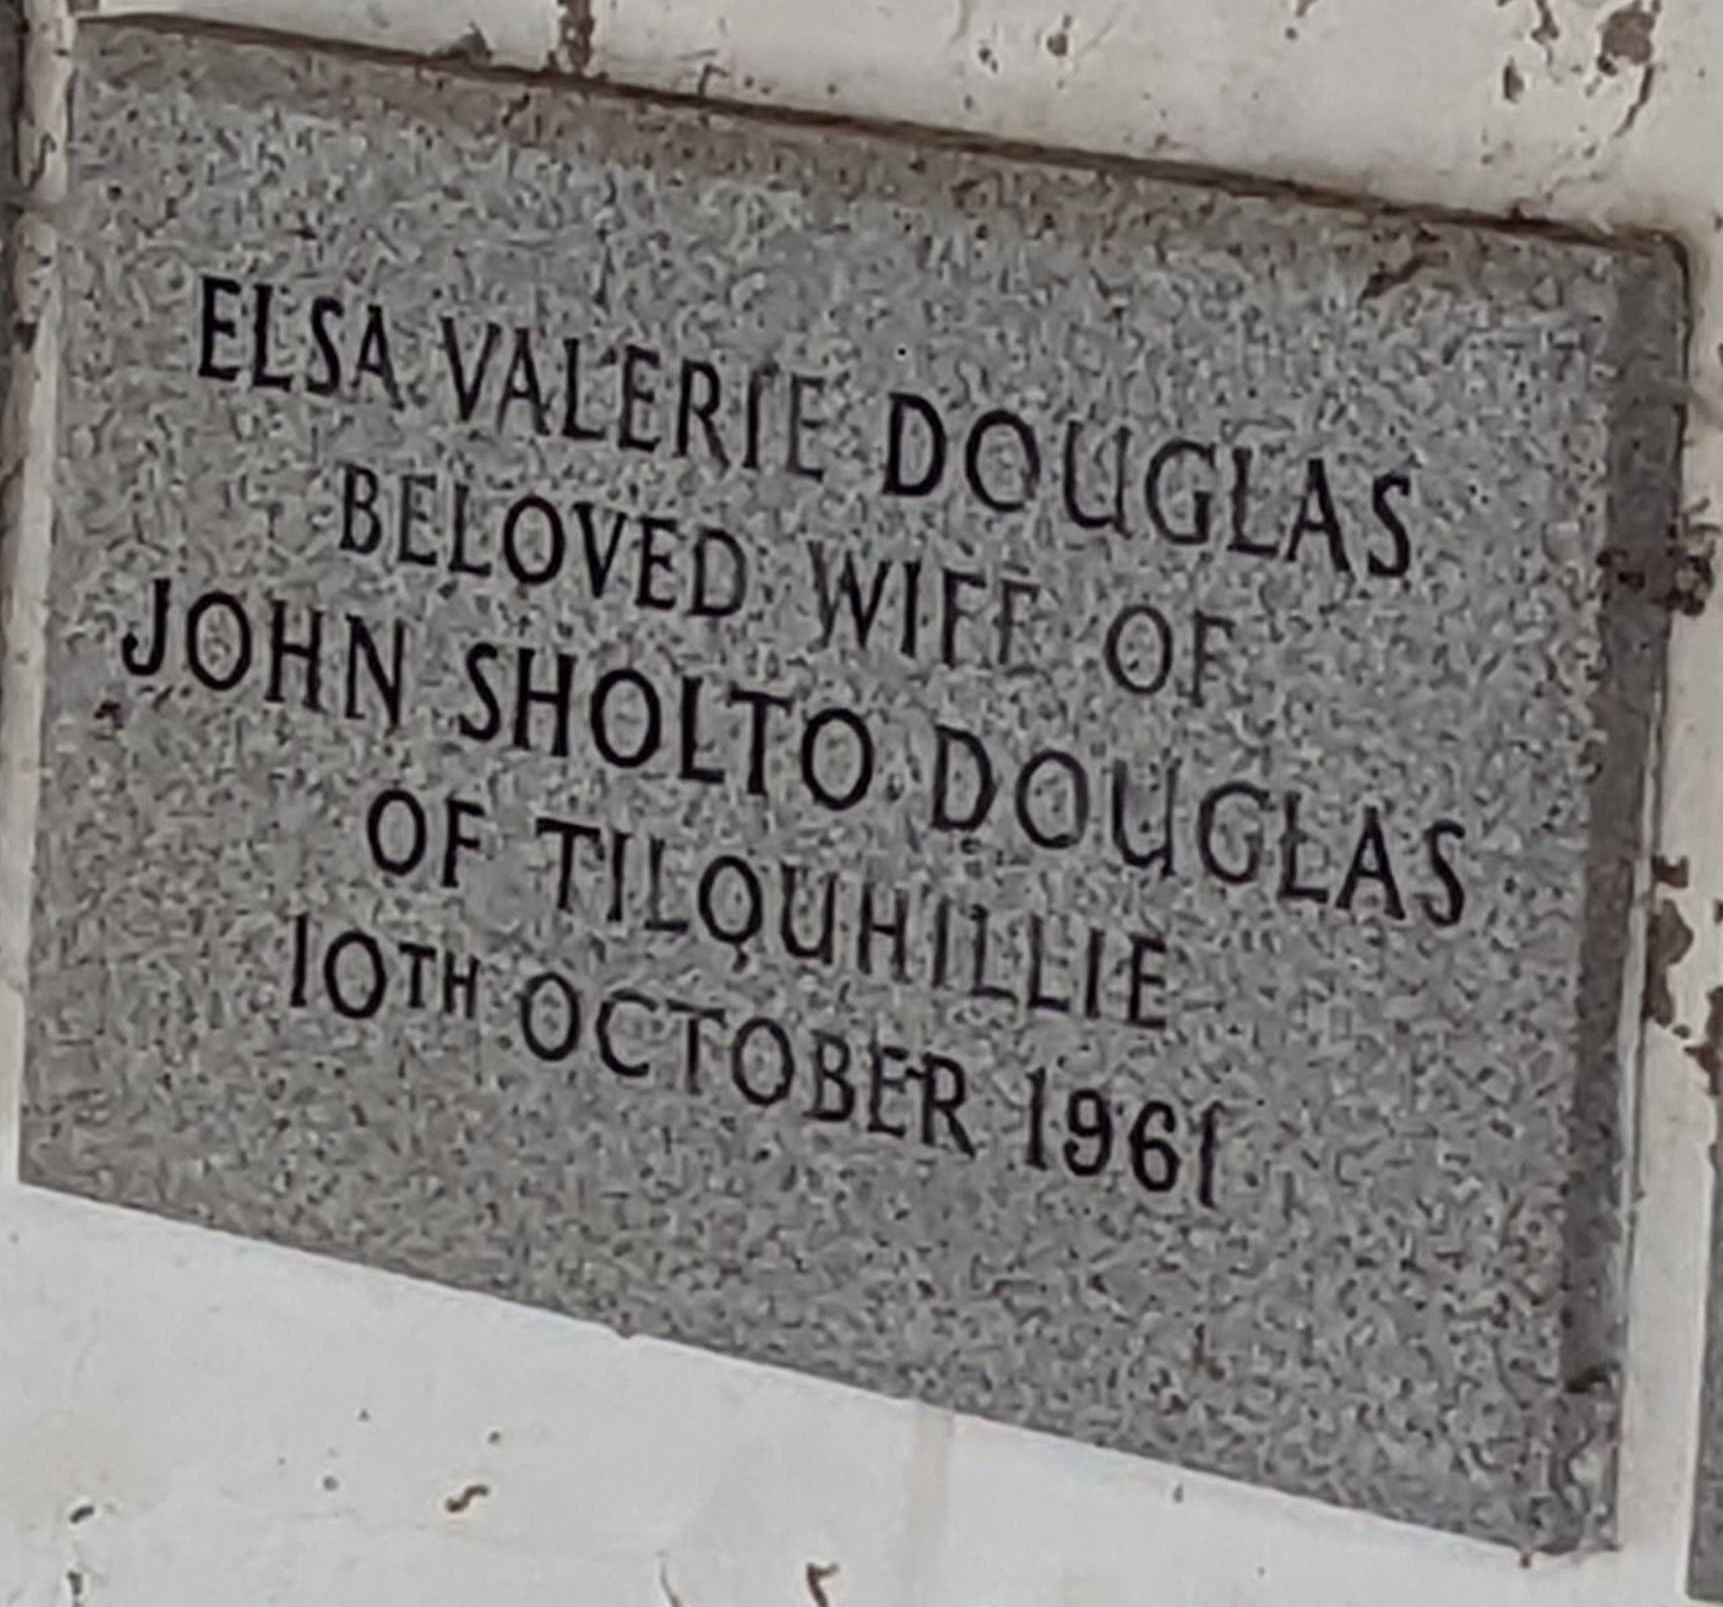 Memorial to Elsa, died 1961